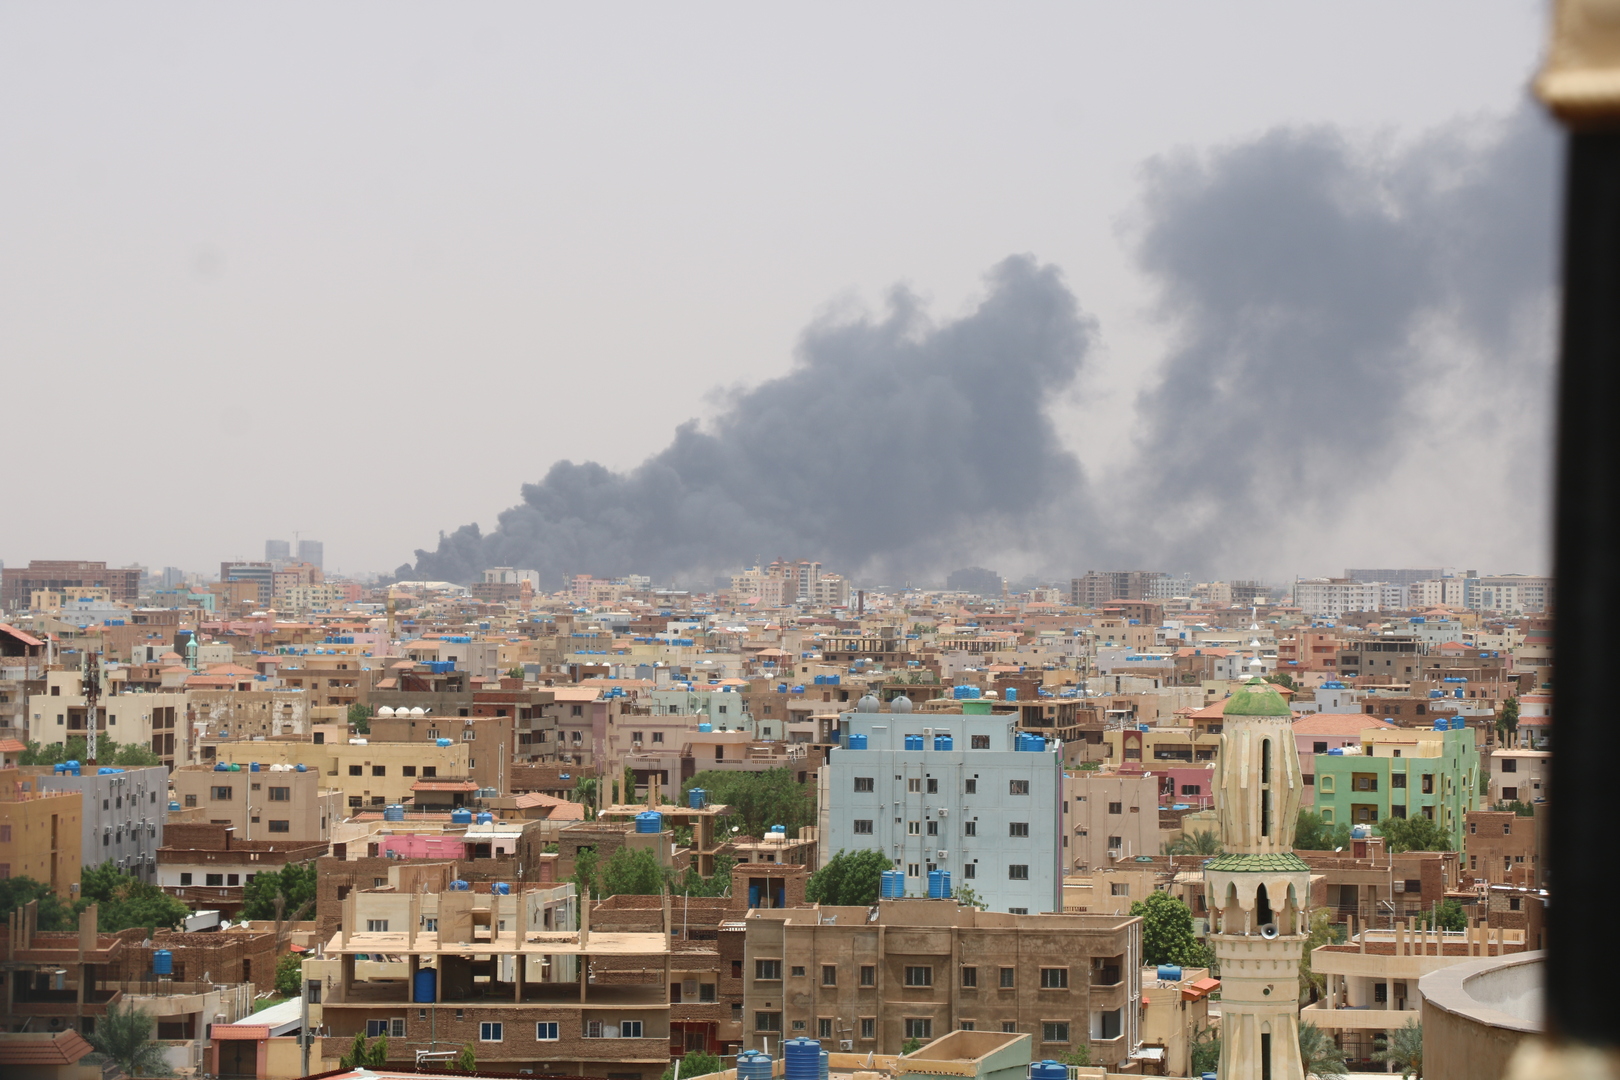 قوات الدعم السريع السودانية تؤكد استعدادها لوقف إطلاق النار